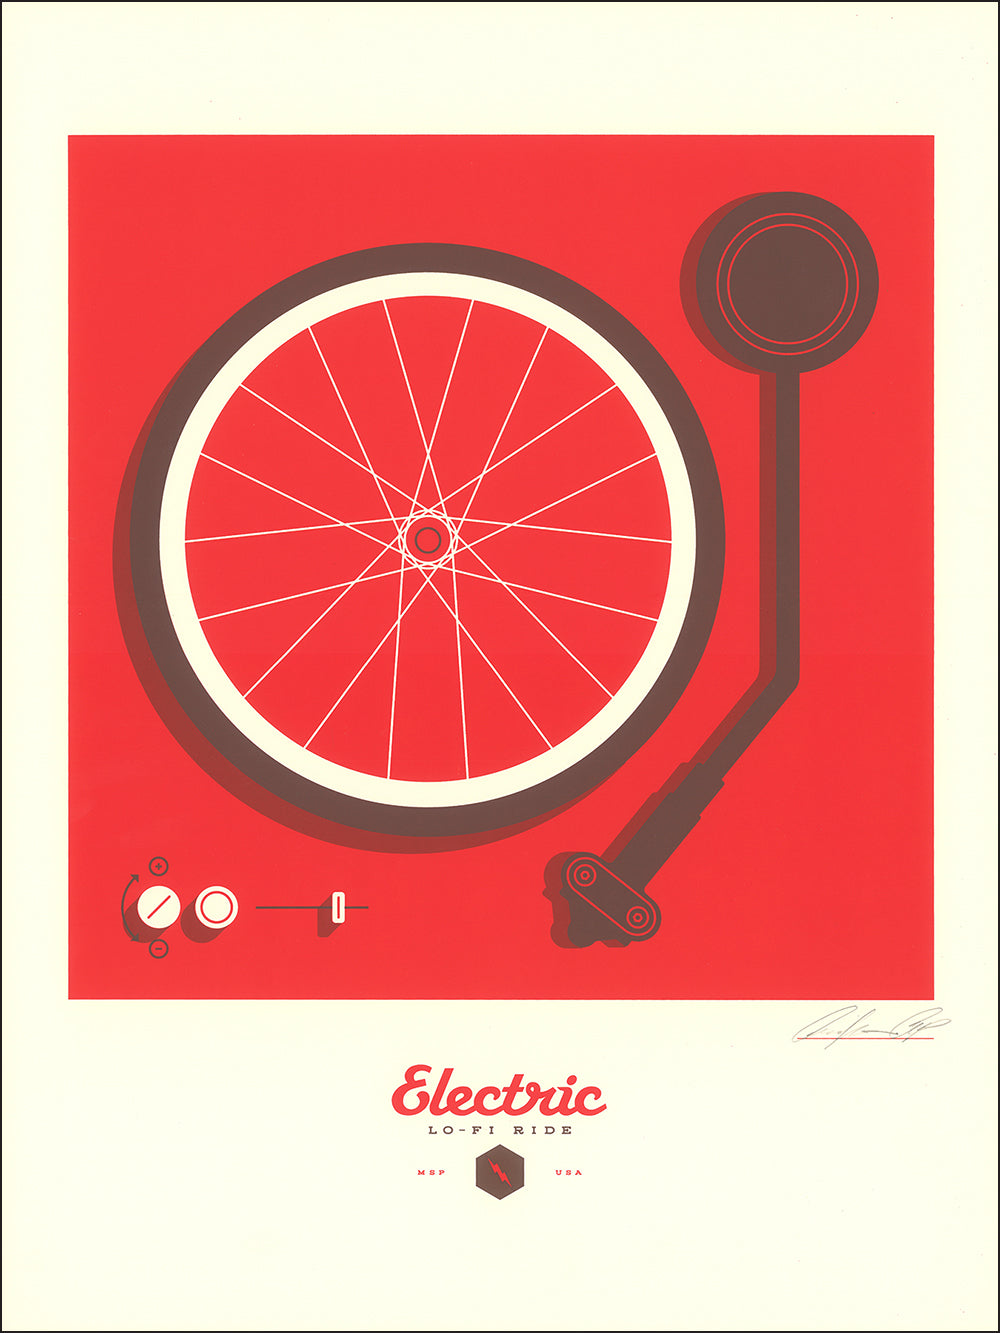 Electric Lo-Fi Ride